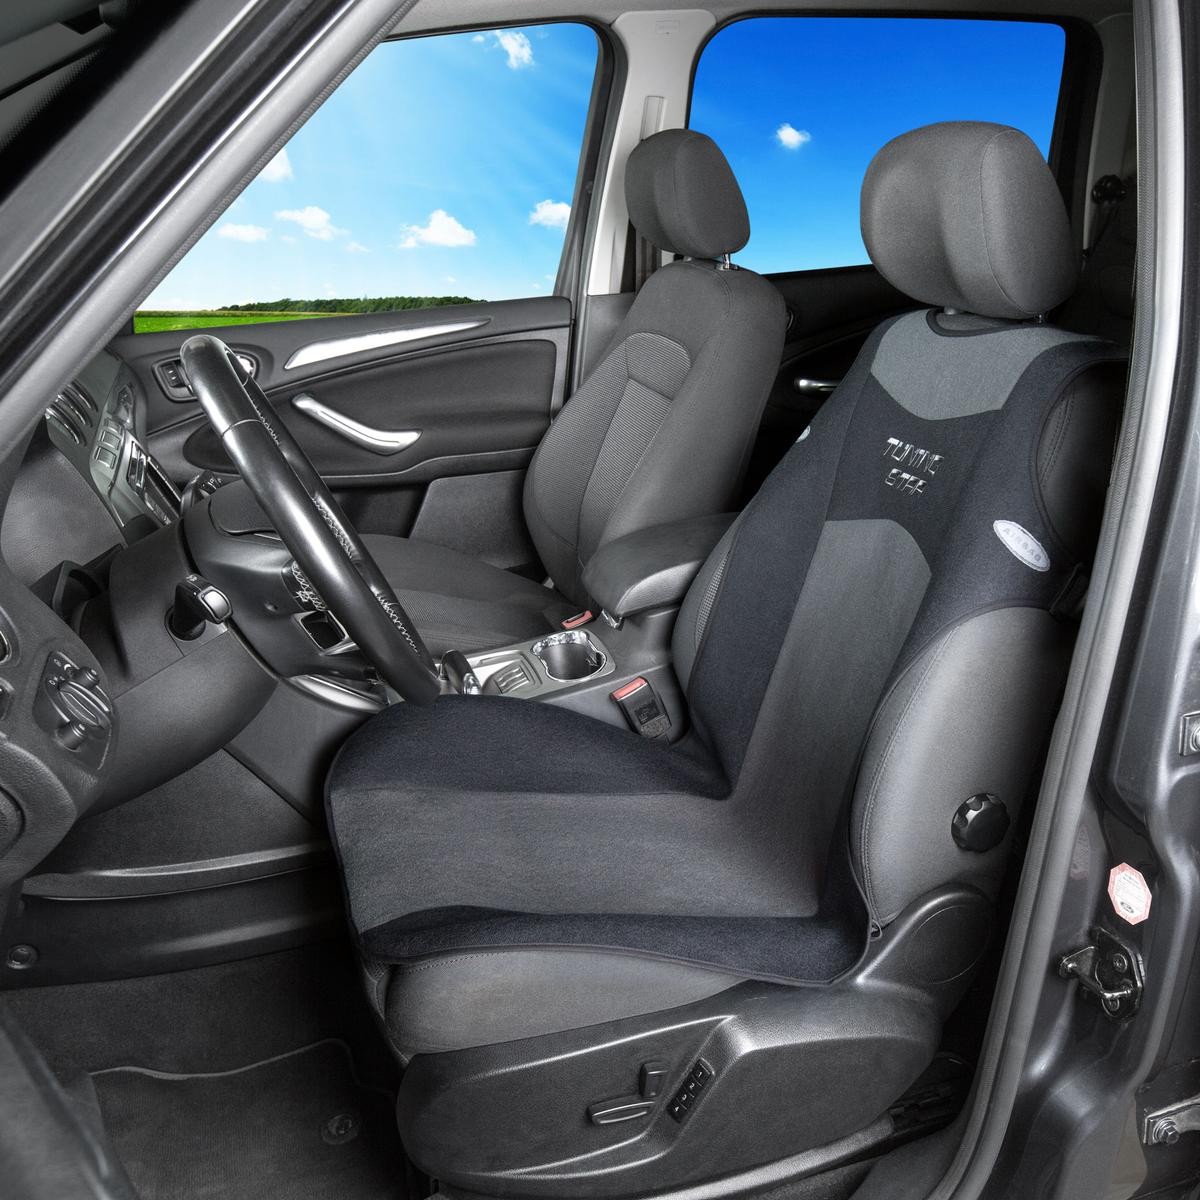 Sitzbezüge zum Auto-Tuning für Audi A4 Avant 8K5, B8 online kaufen